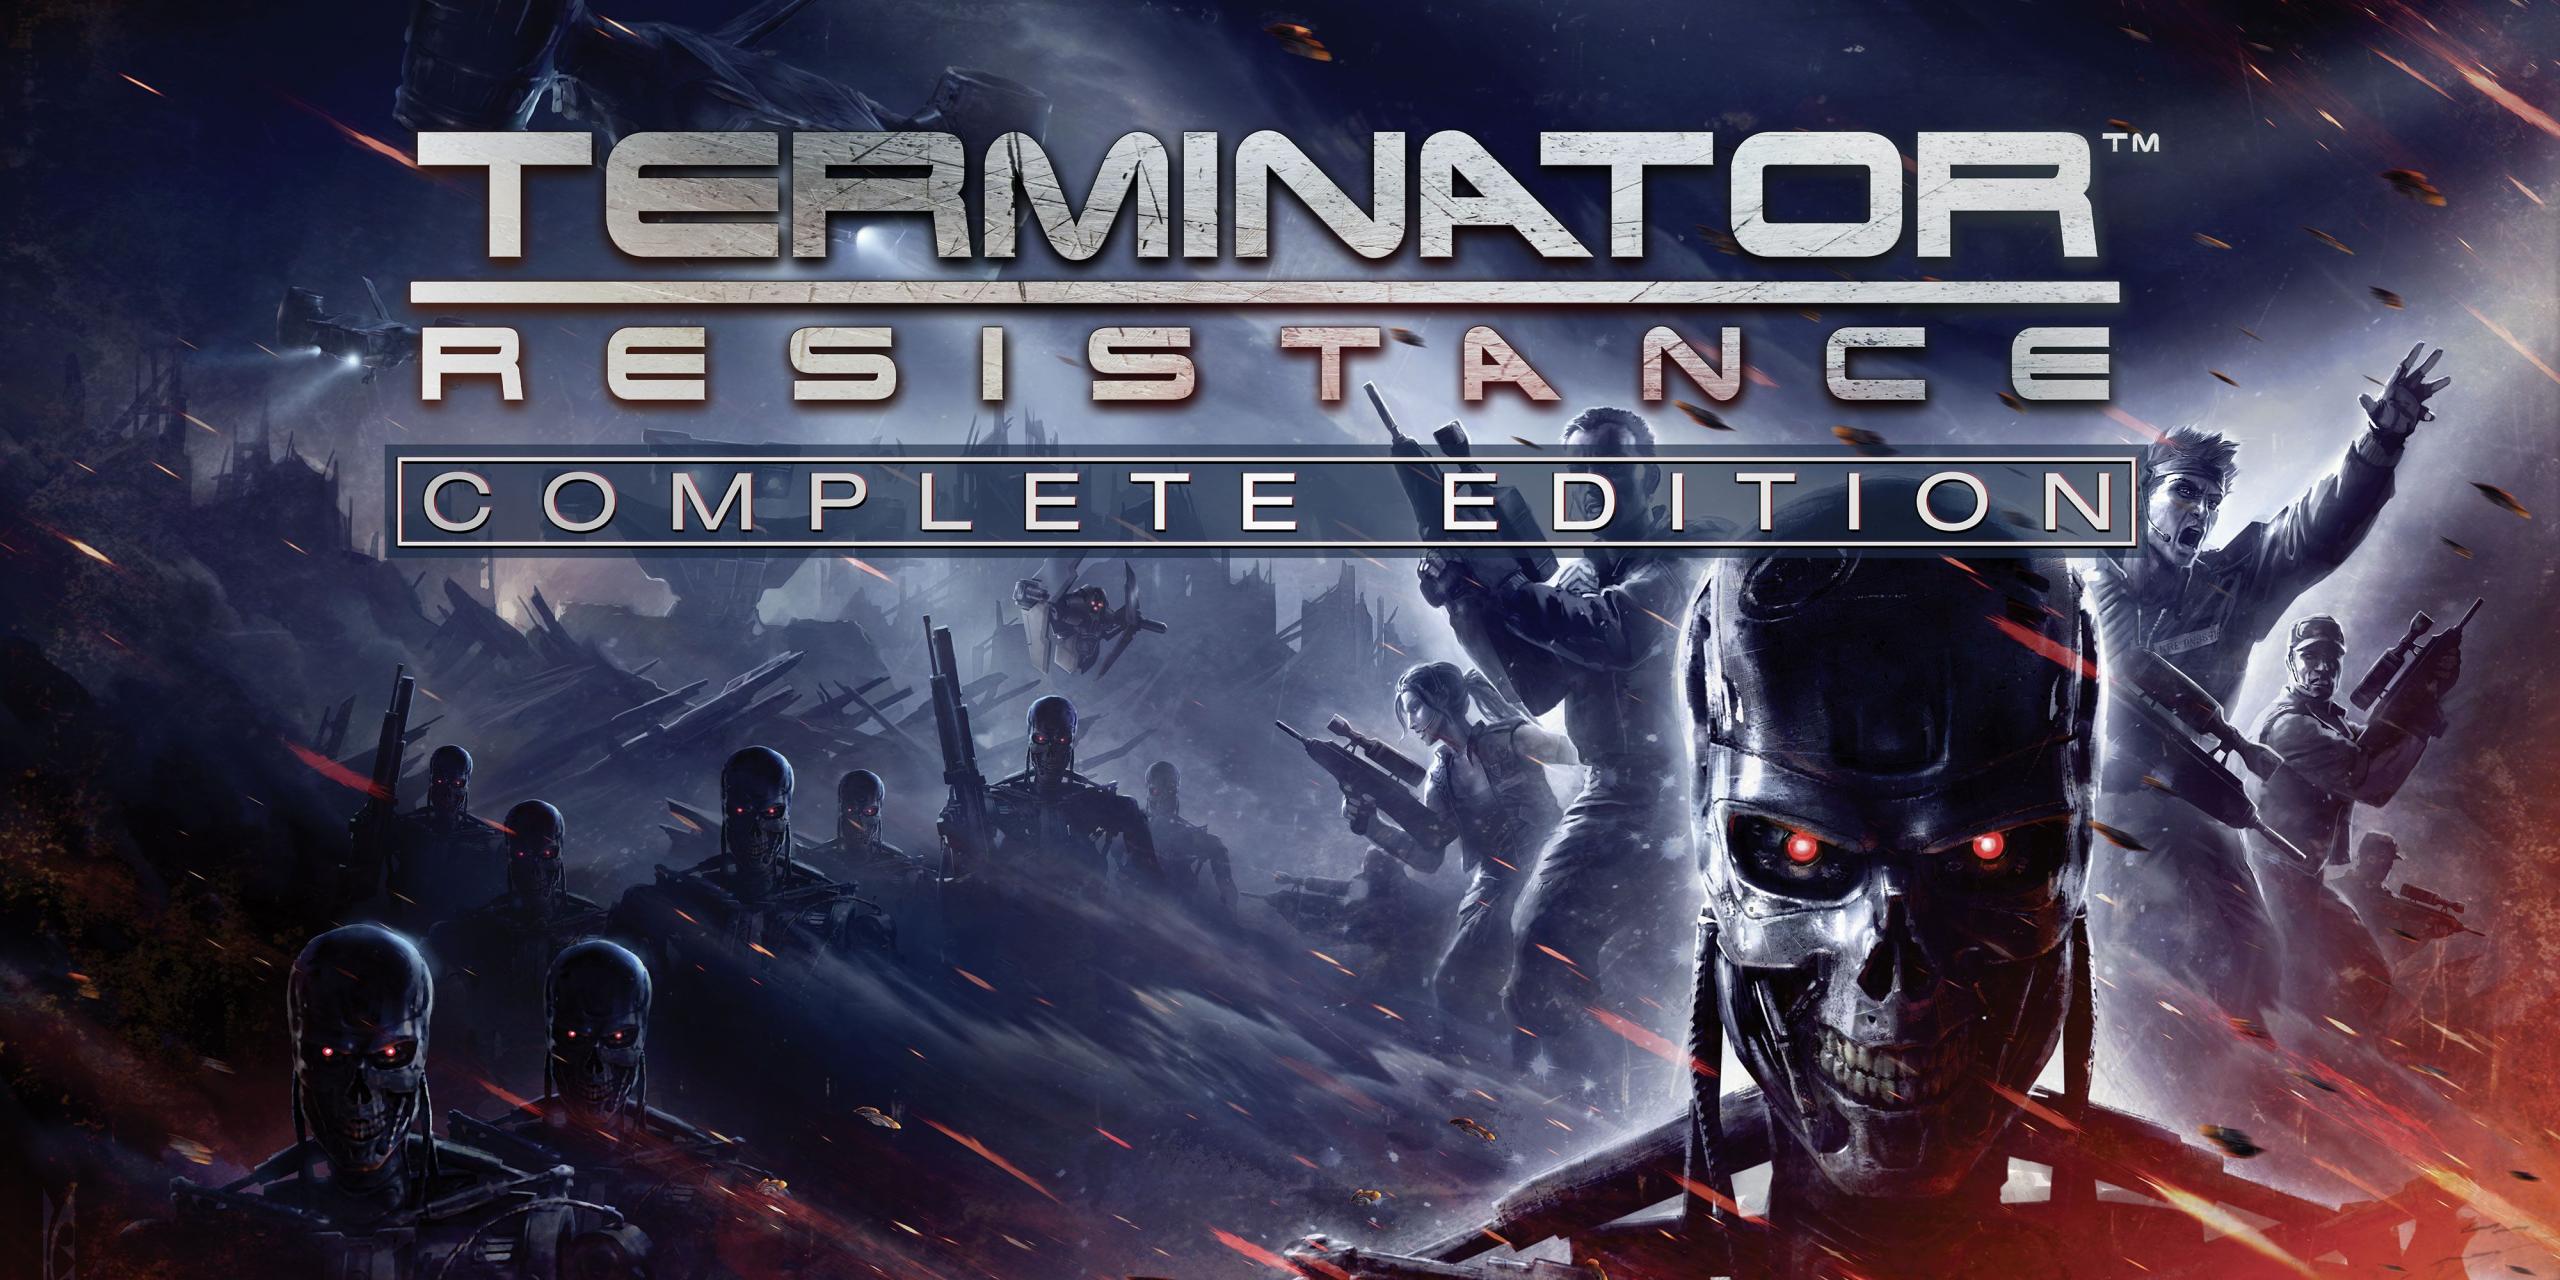 "Una repetición de un FPS promedio" - Terminator: Resistance - Revisión de la edición completa